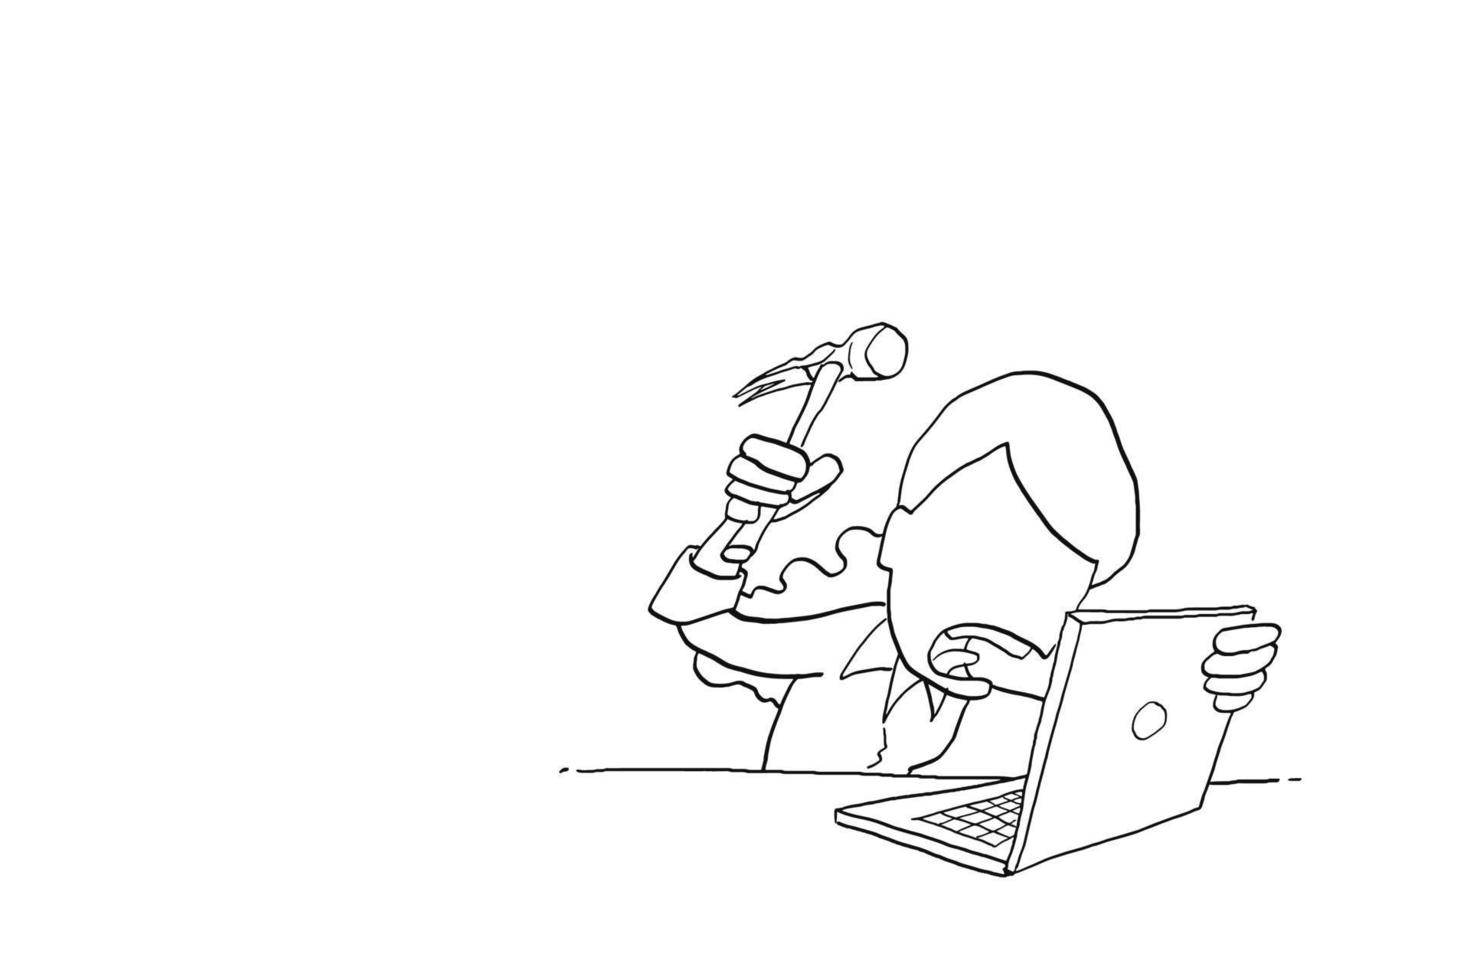 stress la lavoratrice si arrabbia e vuole martellare il laptop. disegno dell'illustrazione di vettore del fumetto